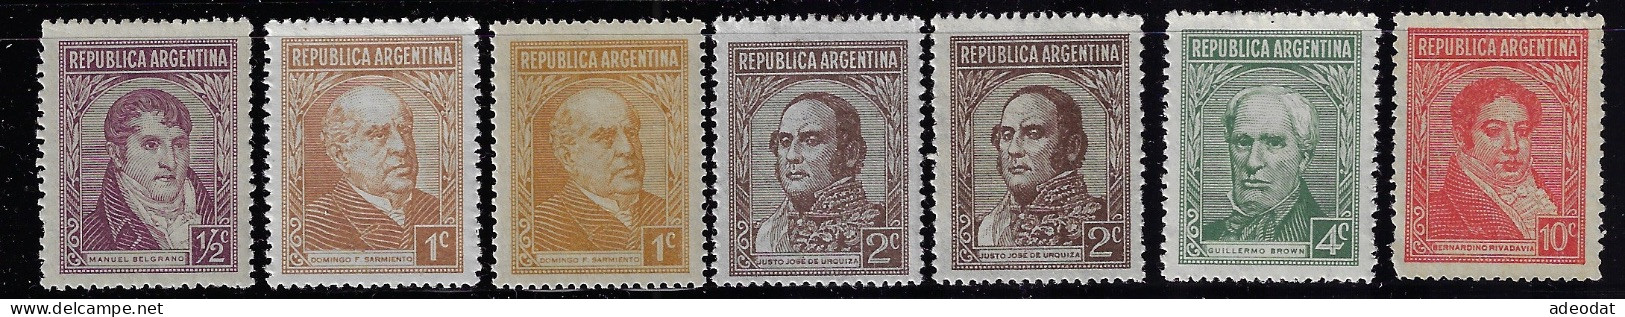 ARGENTINA  1935  SCOTT #418-420,426,430 MH - Unused Stamps